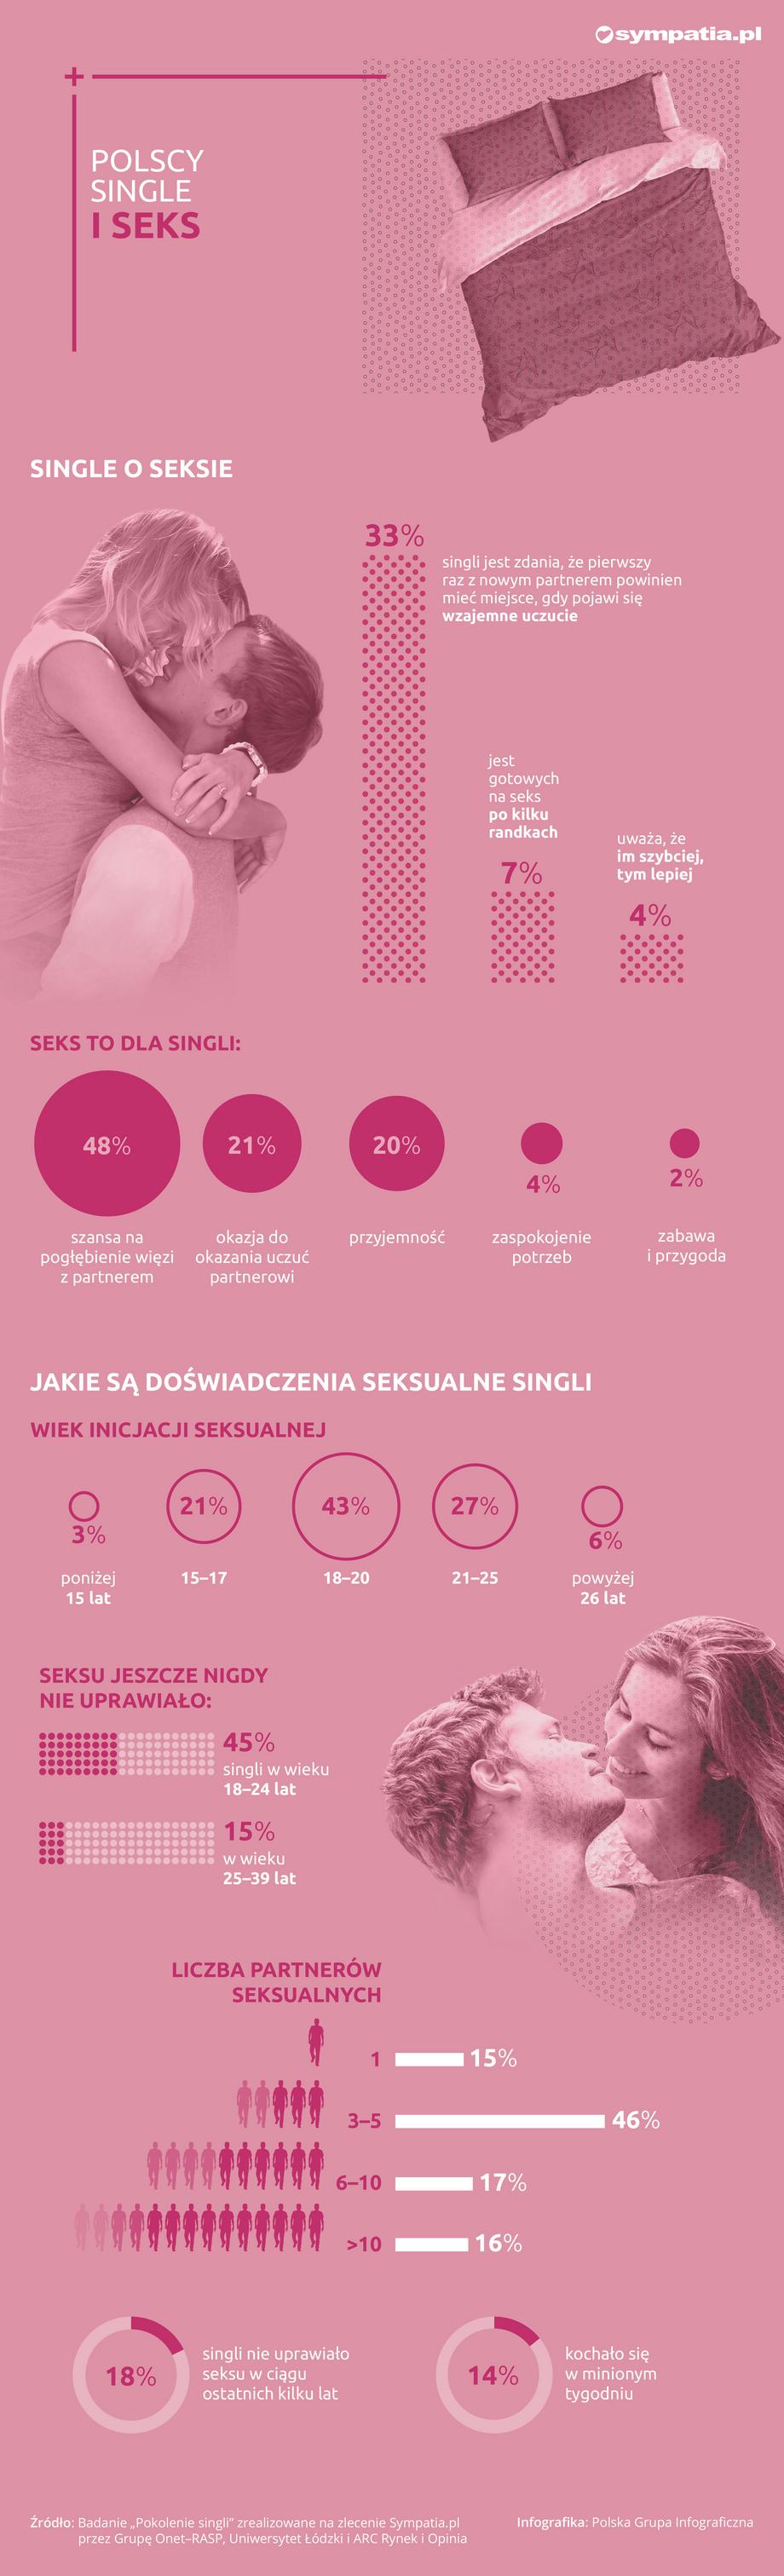 Pokolenie singli: doświadczenia seksualne polskich singli [INFOGRAFIKA]